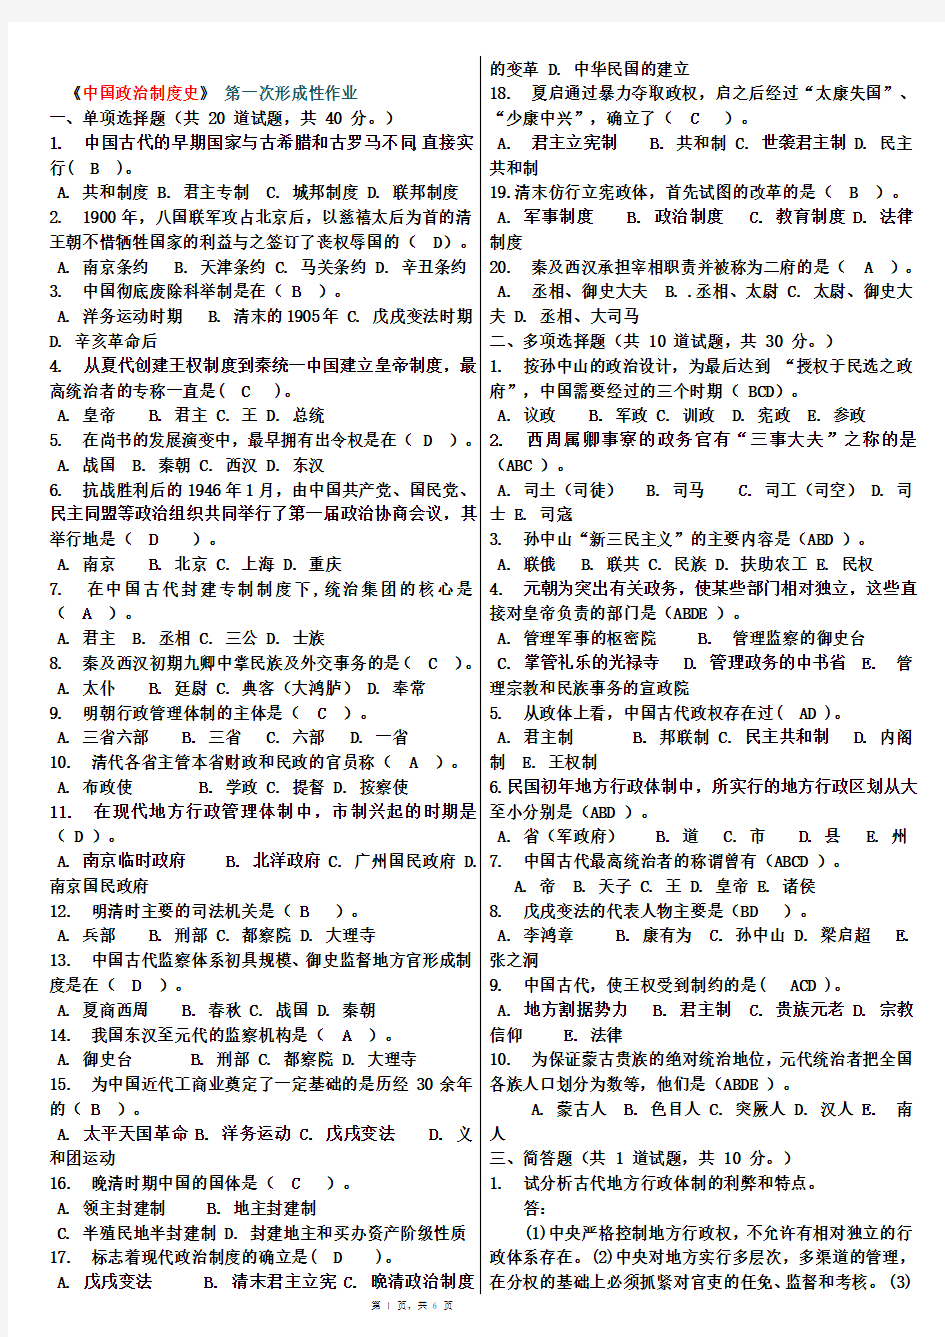 《中国政治制度史》任务1-4